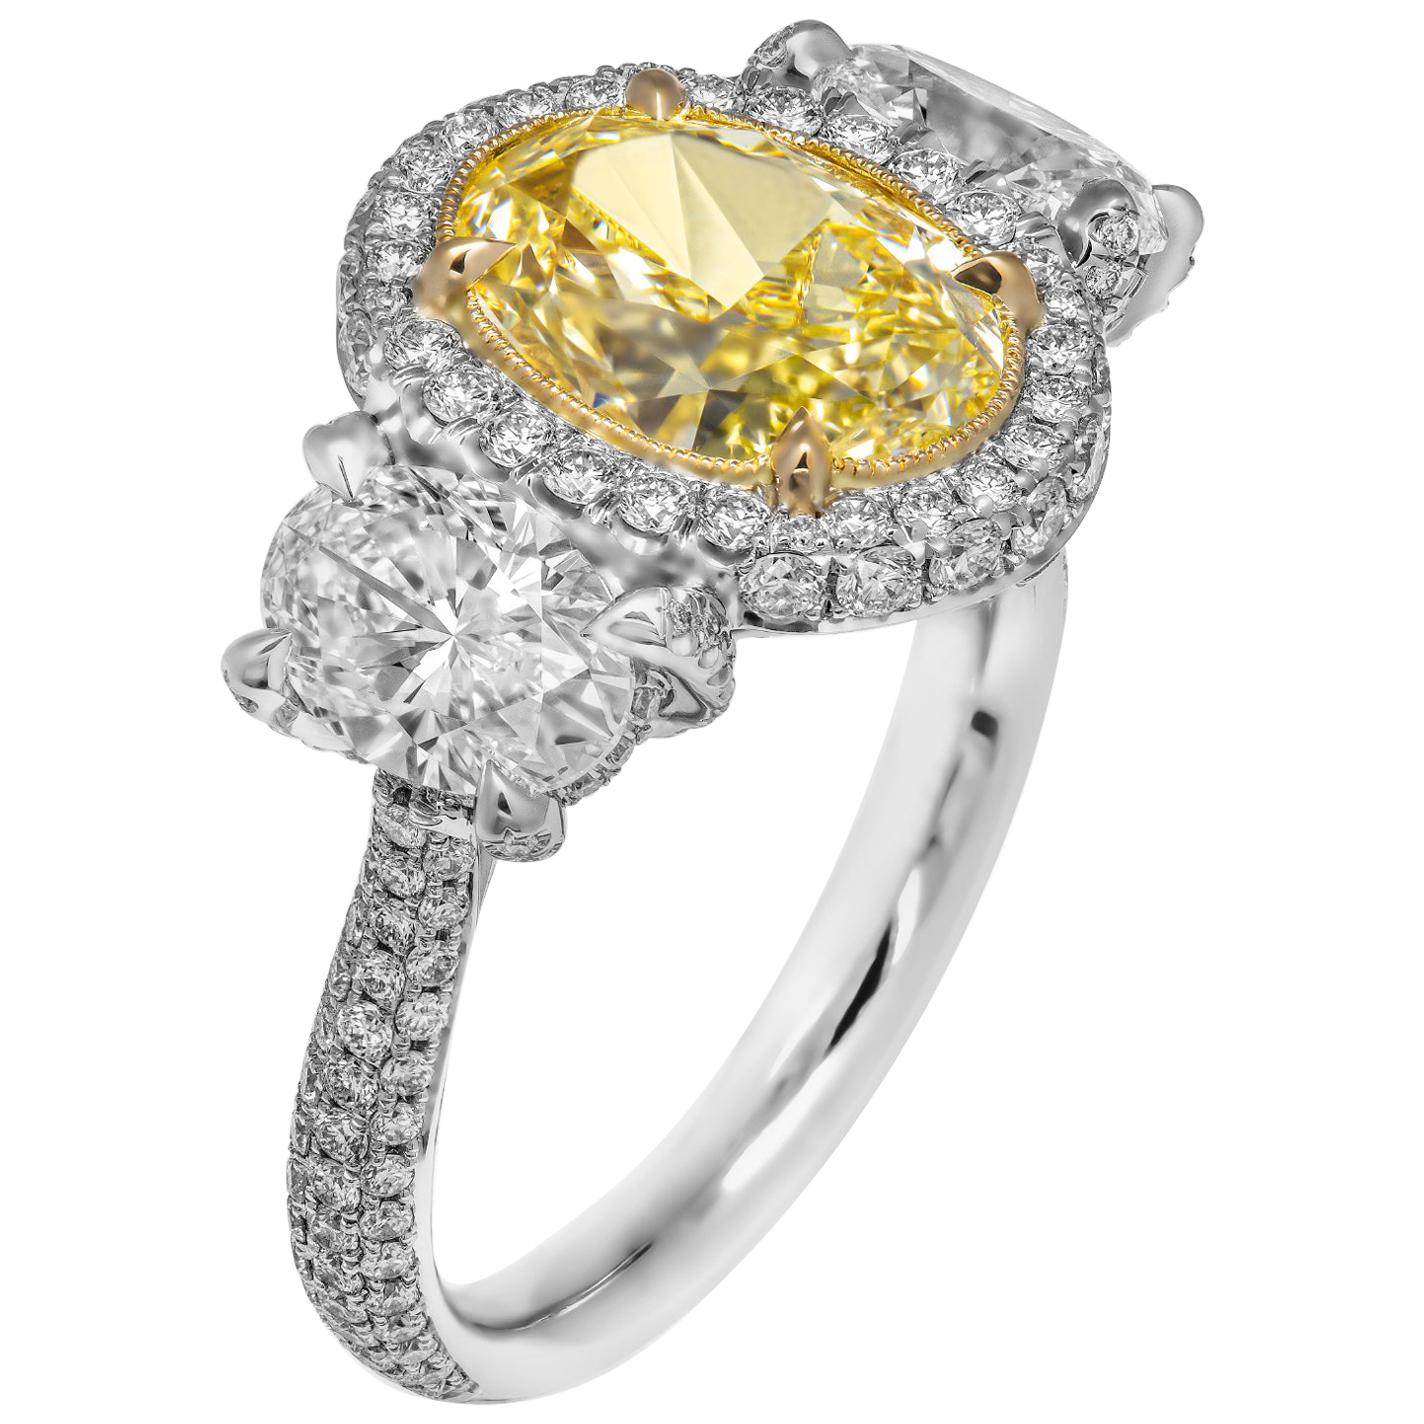 GIA-zertifizierter 3-Stein-Ring mit 3,52 Karat extravaganten hellgelben ovalen Diamanten